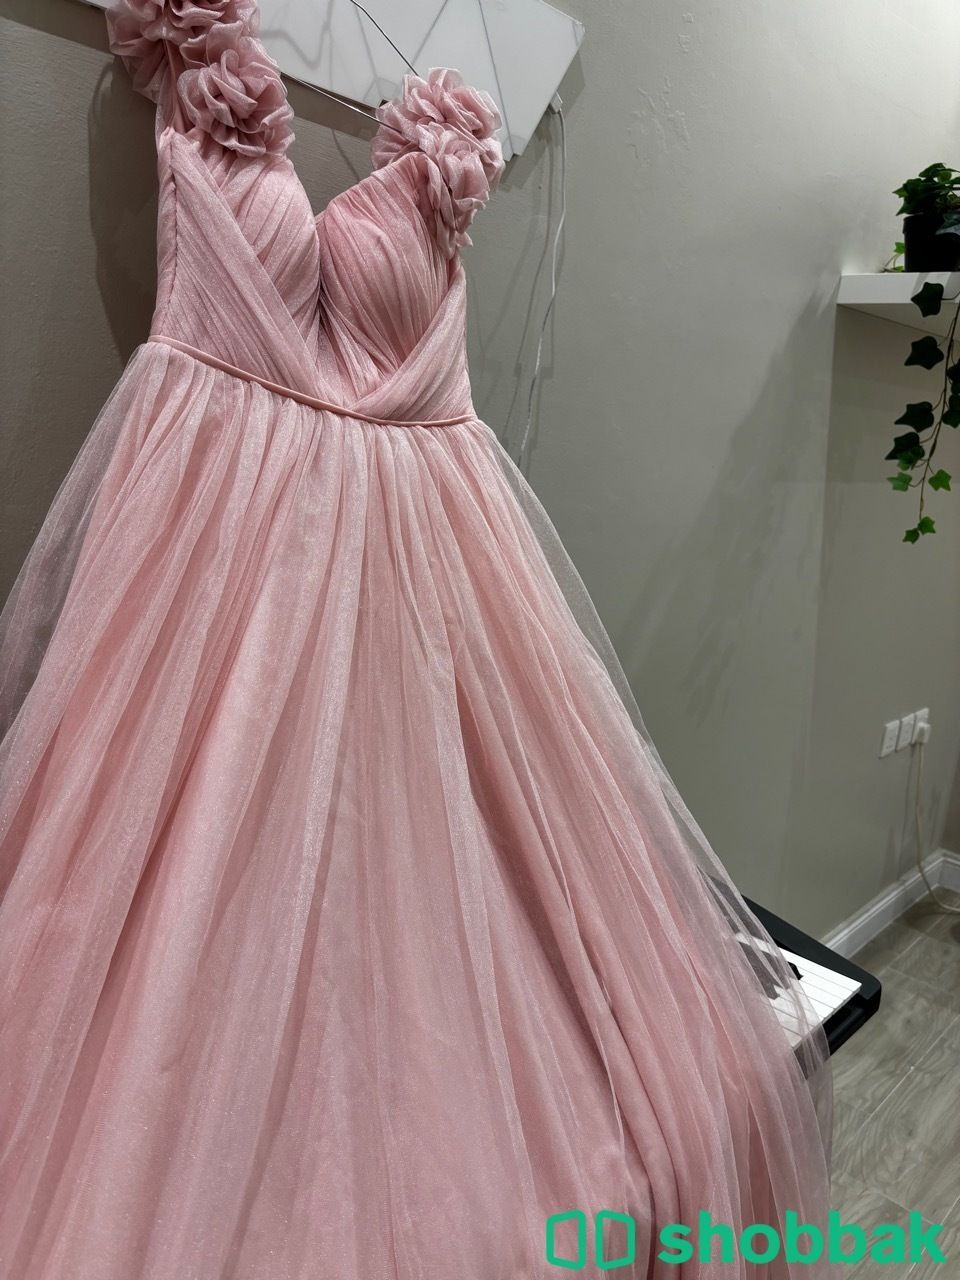 فستان ناعم baby Pink اشتريته من تركيا ولم استخدمه شباك السعودية